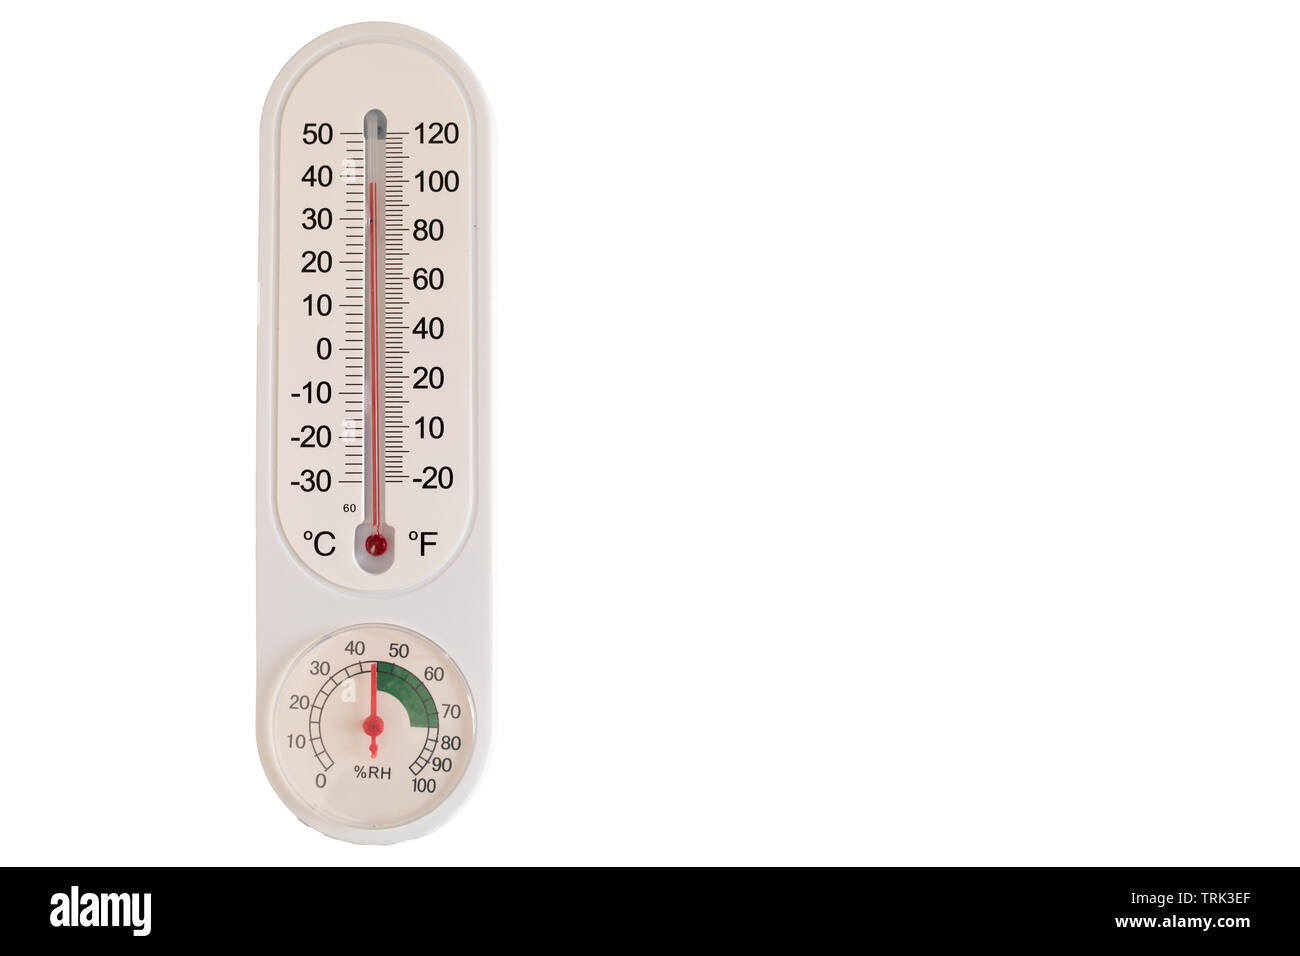 Thermomètre indiquant la température ambiante et l'humidité. Isolé sur fond  blanc Photo Stock - Alamy